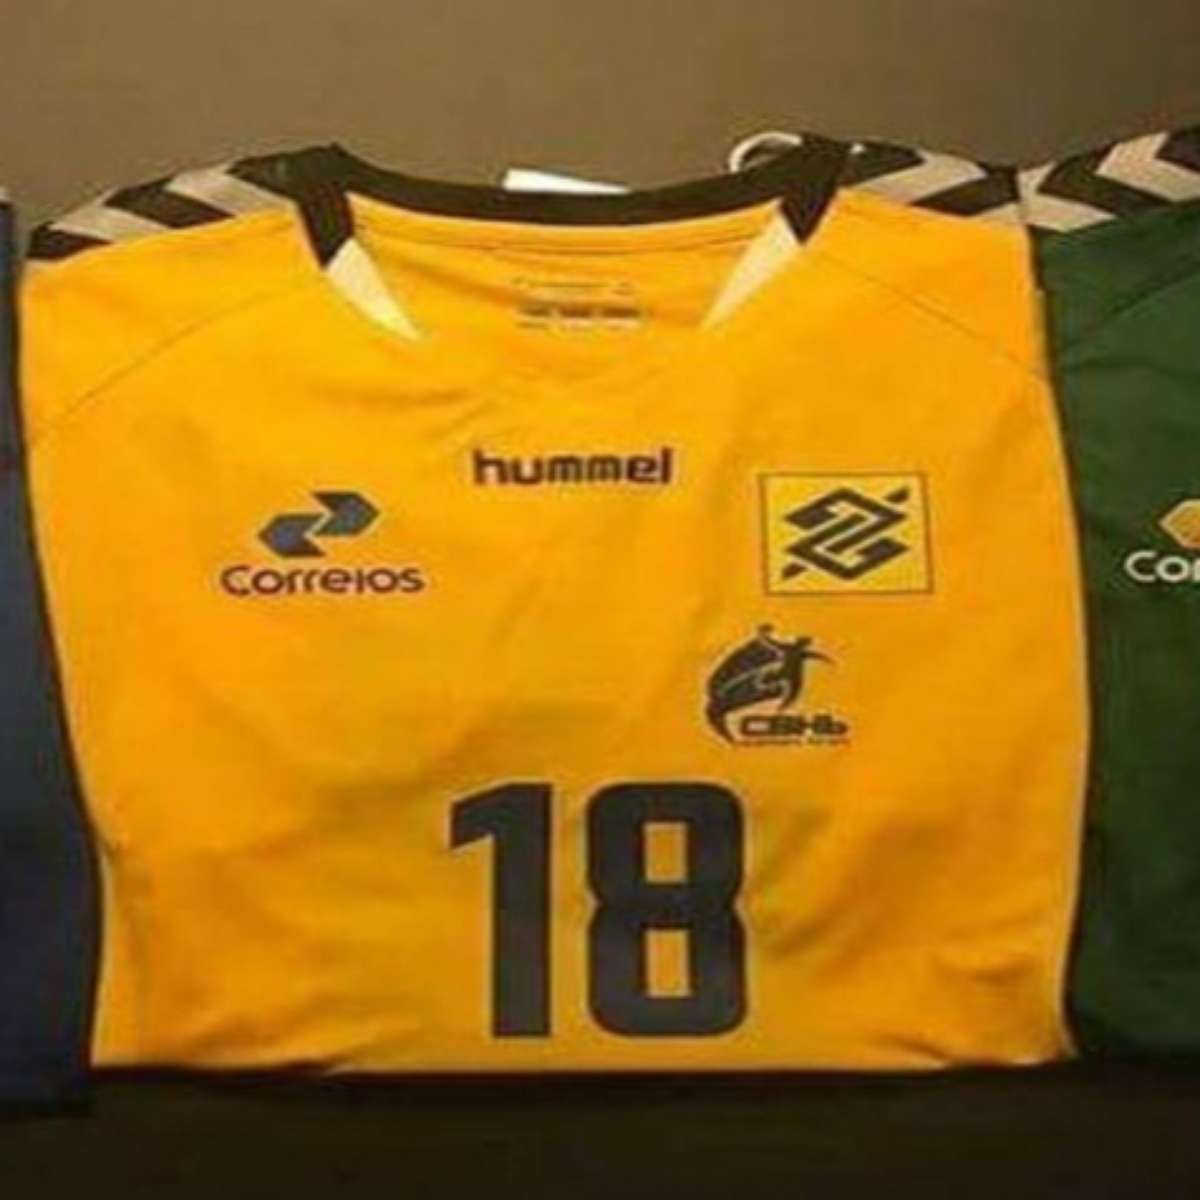 Hummel é a nova parceira da Confederação Brasileira de Handebol